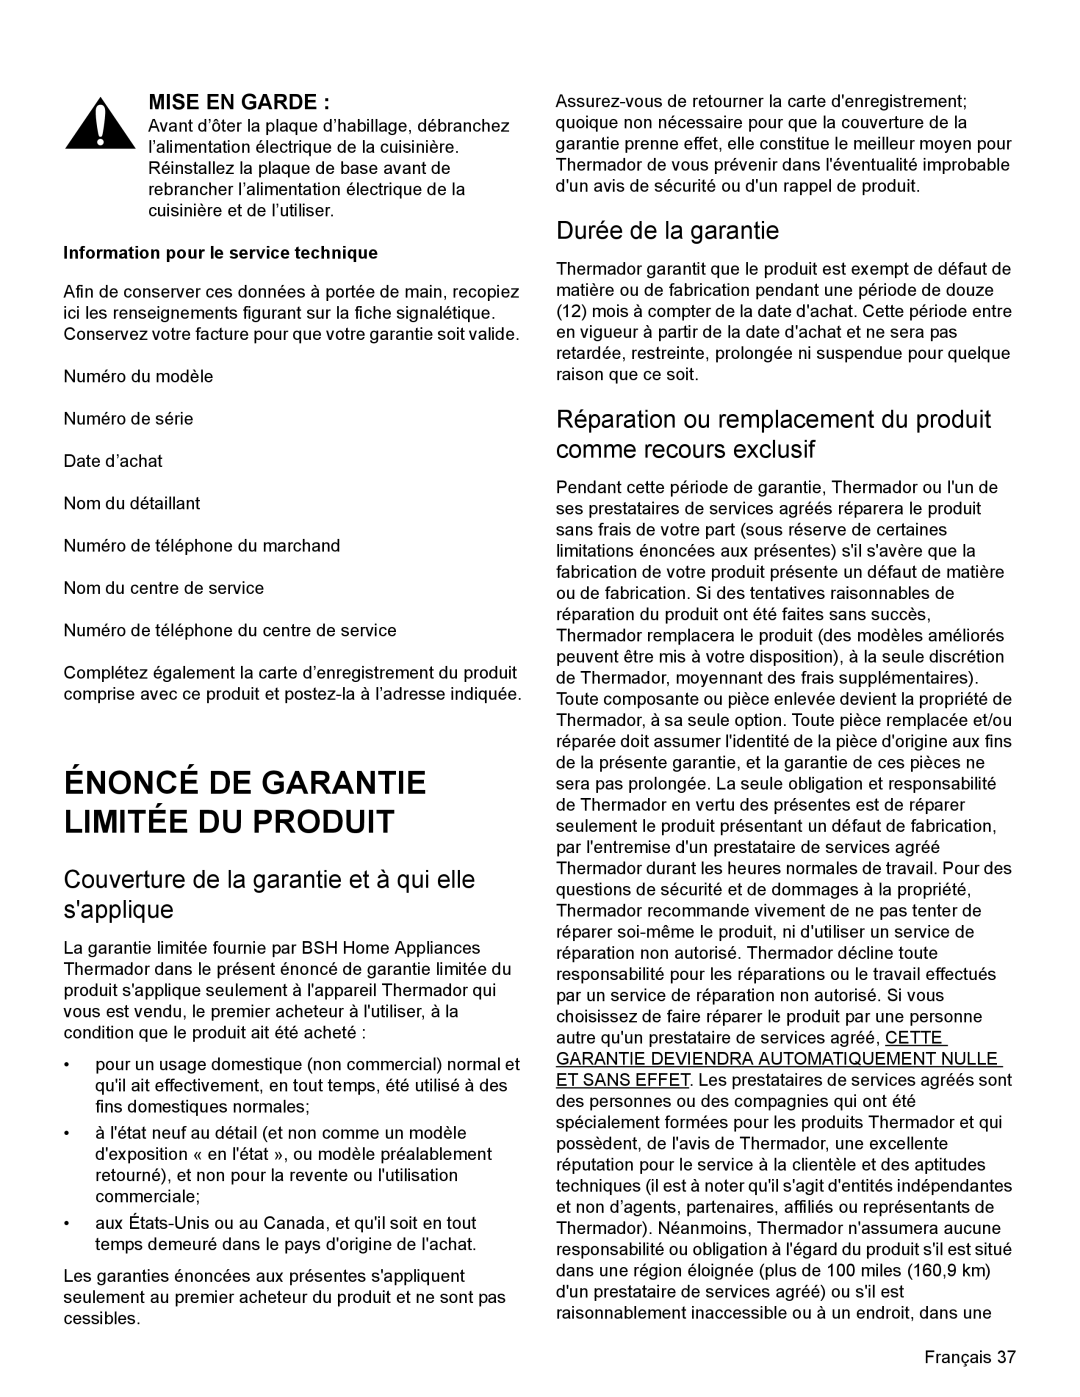 Thermador PRL36, PRG30, PRL30 manual Énoncé De Garantie Limitée Du Produit, Couverture de la garantie et à qui elle sapplique 